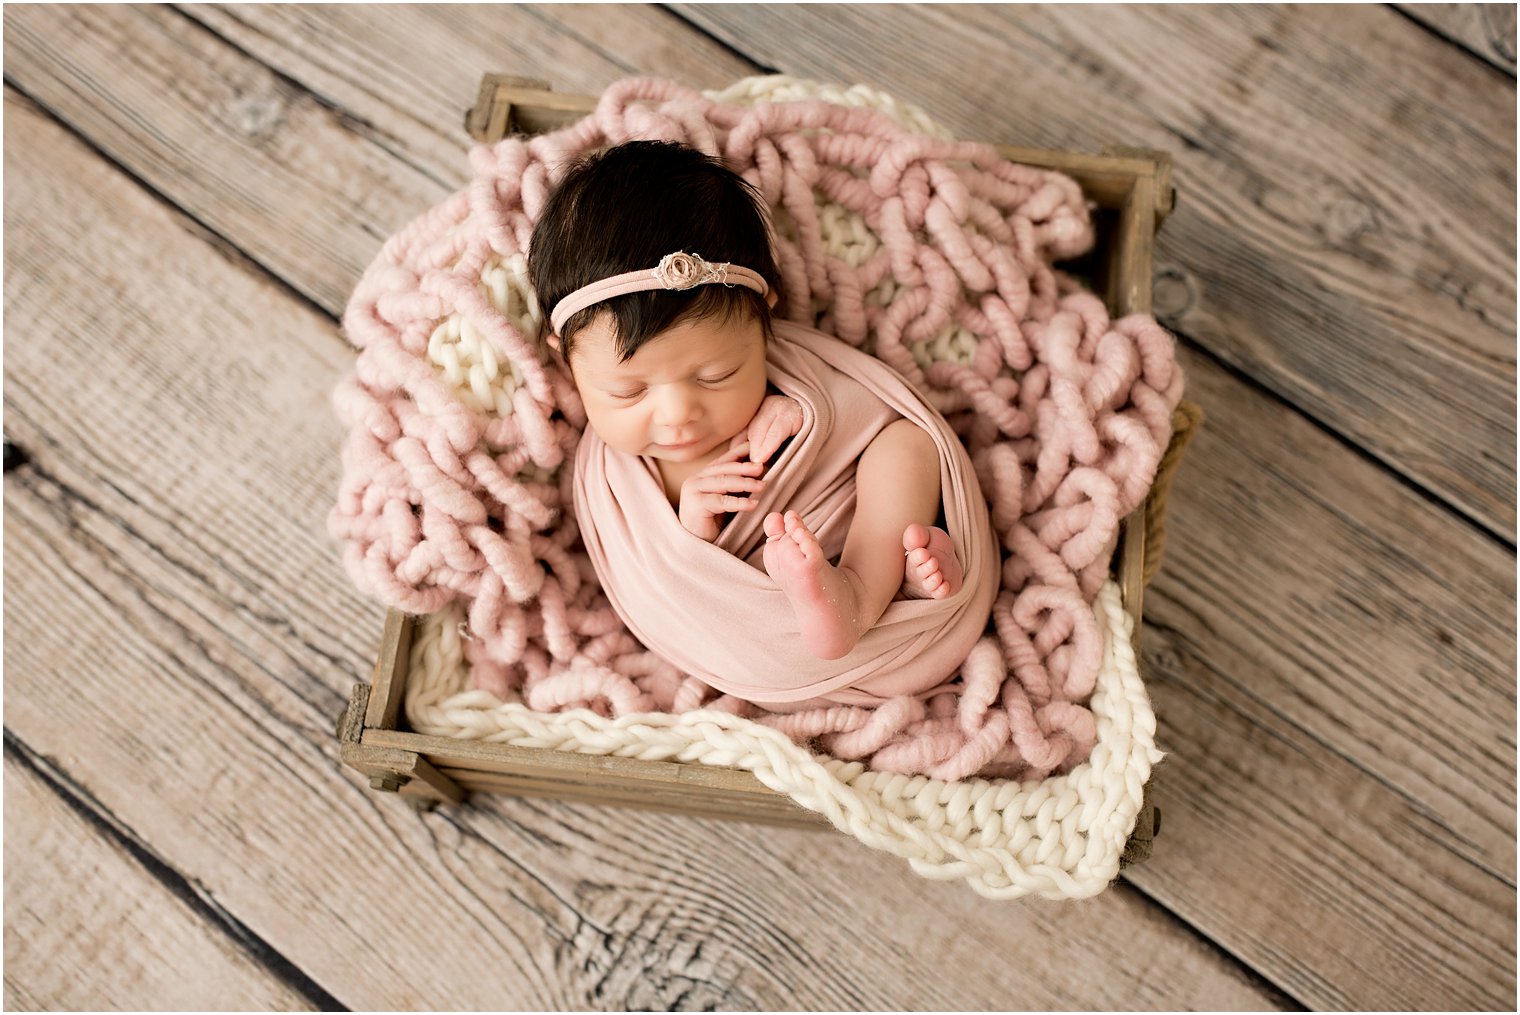 newborn girl in a wooden crate